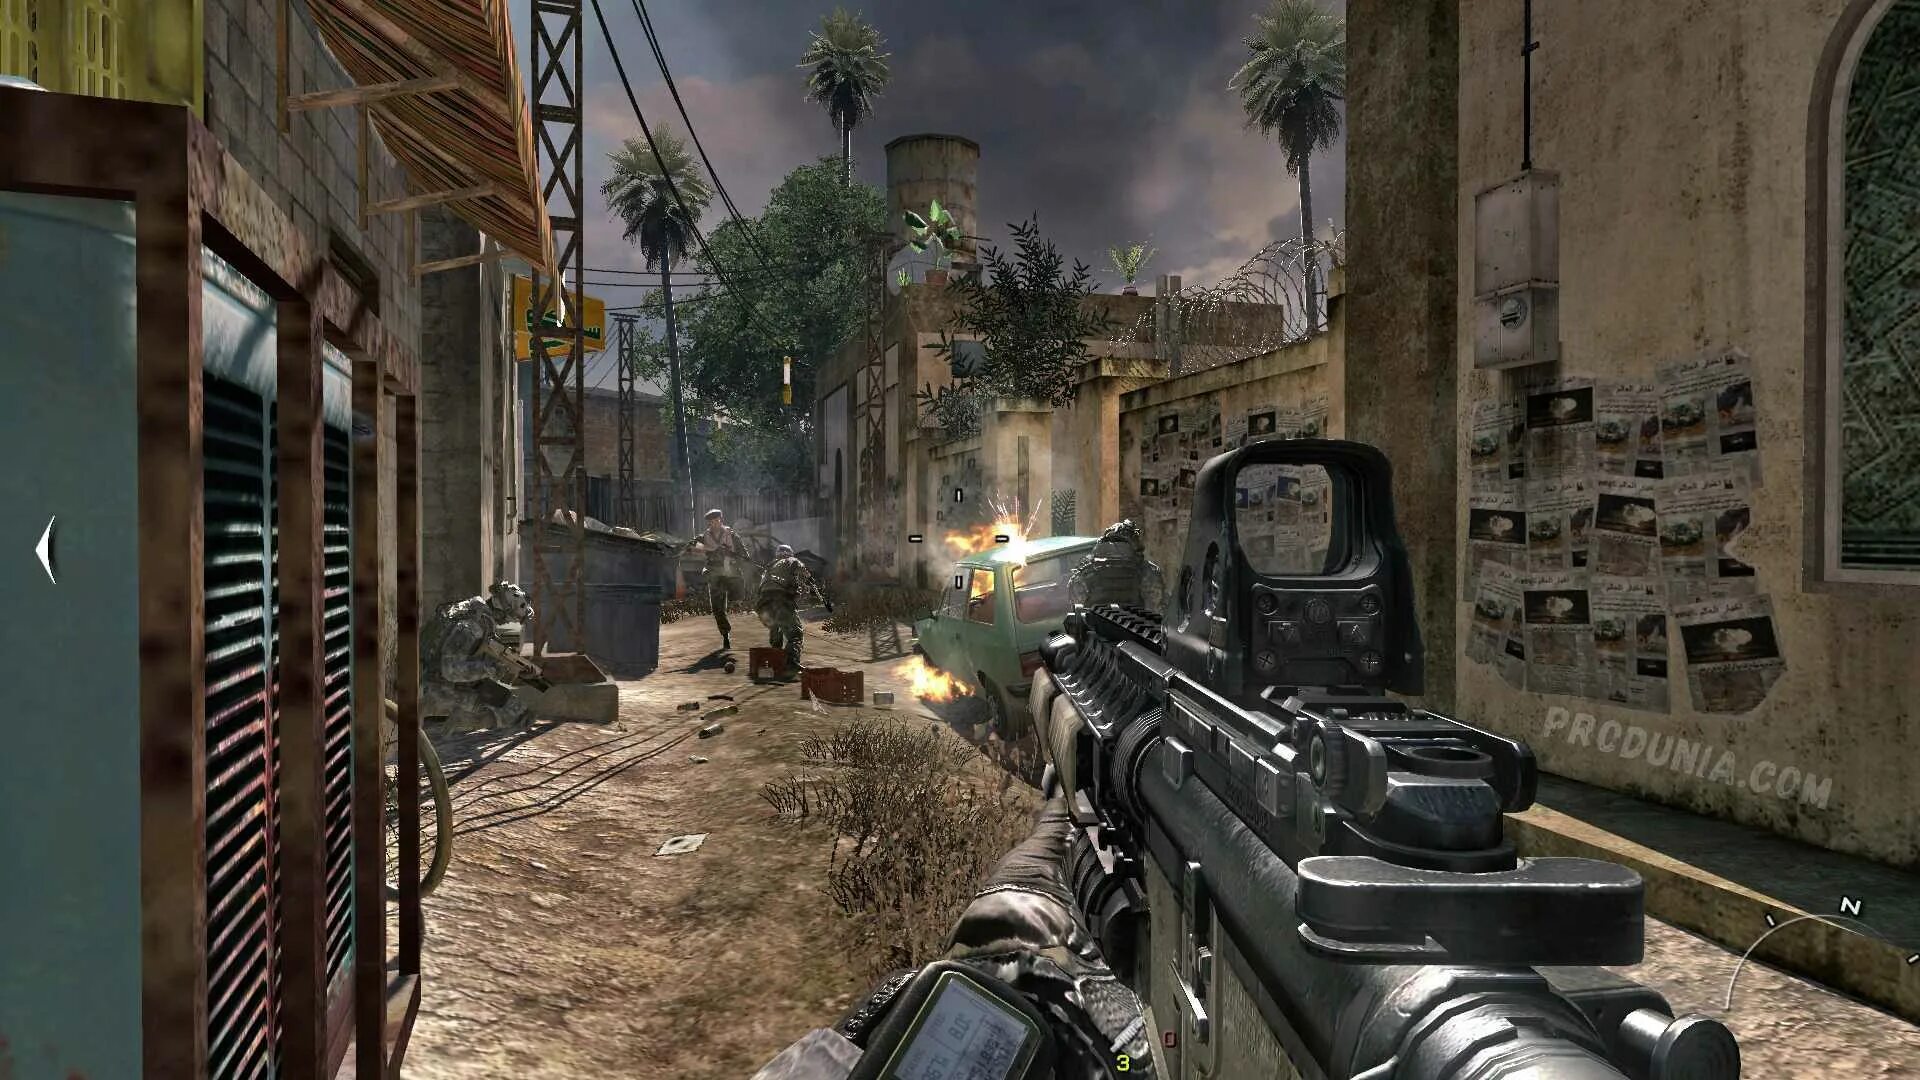 Modern Warfare 2. Call of Duty: Modern Warfare 2. Call of Duty 4 Modern Warfare 2. Call of Duty Modern Warfare 5. Игра от механиков калов дьюти